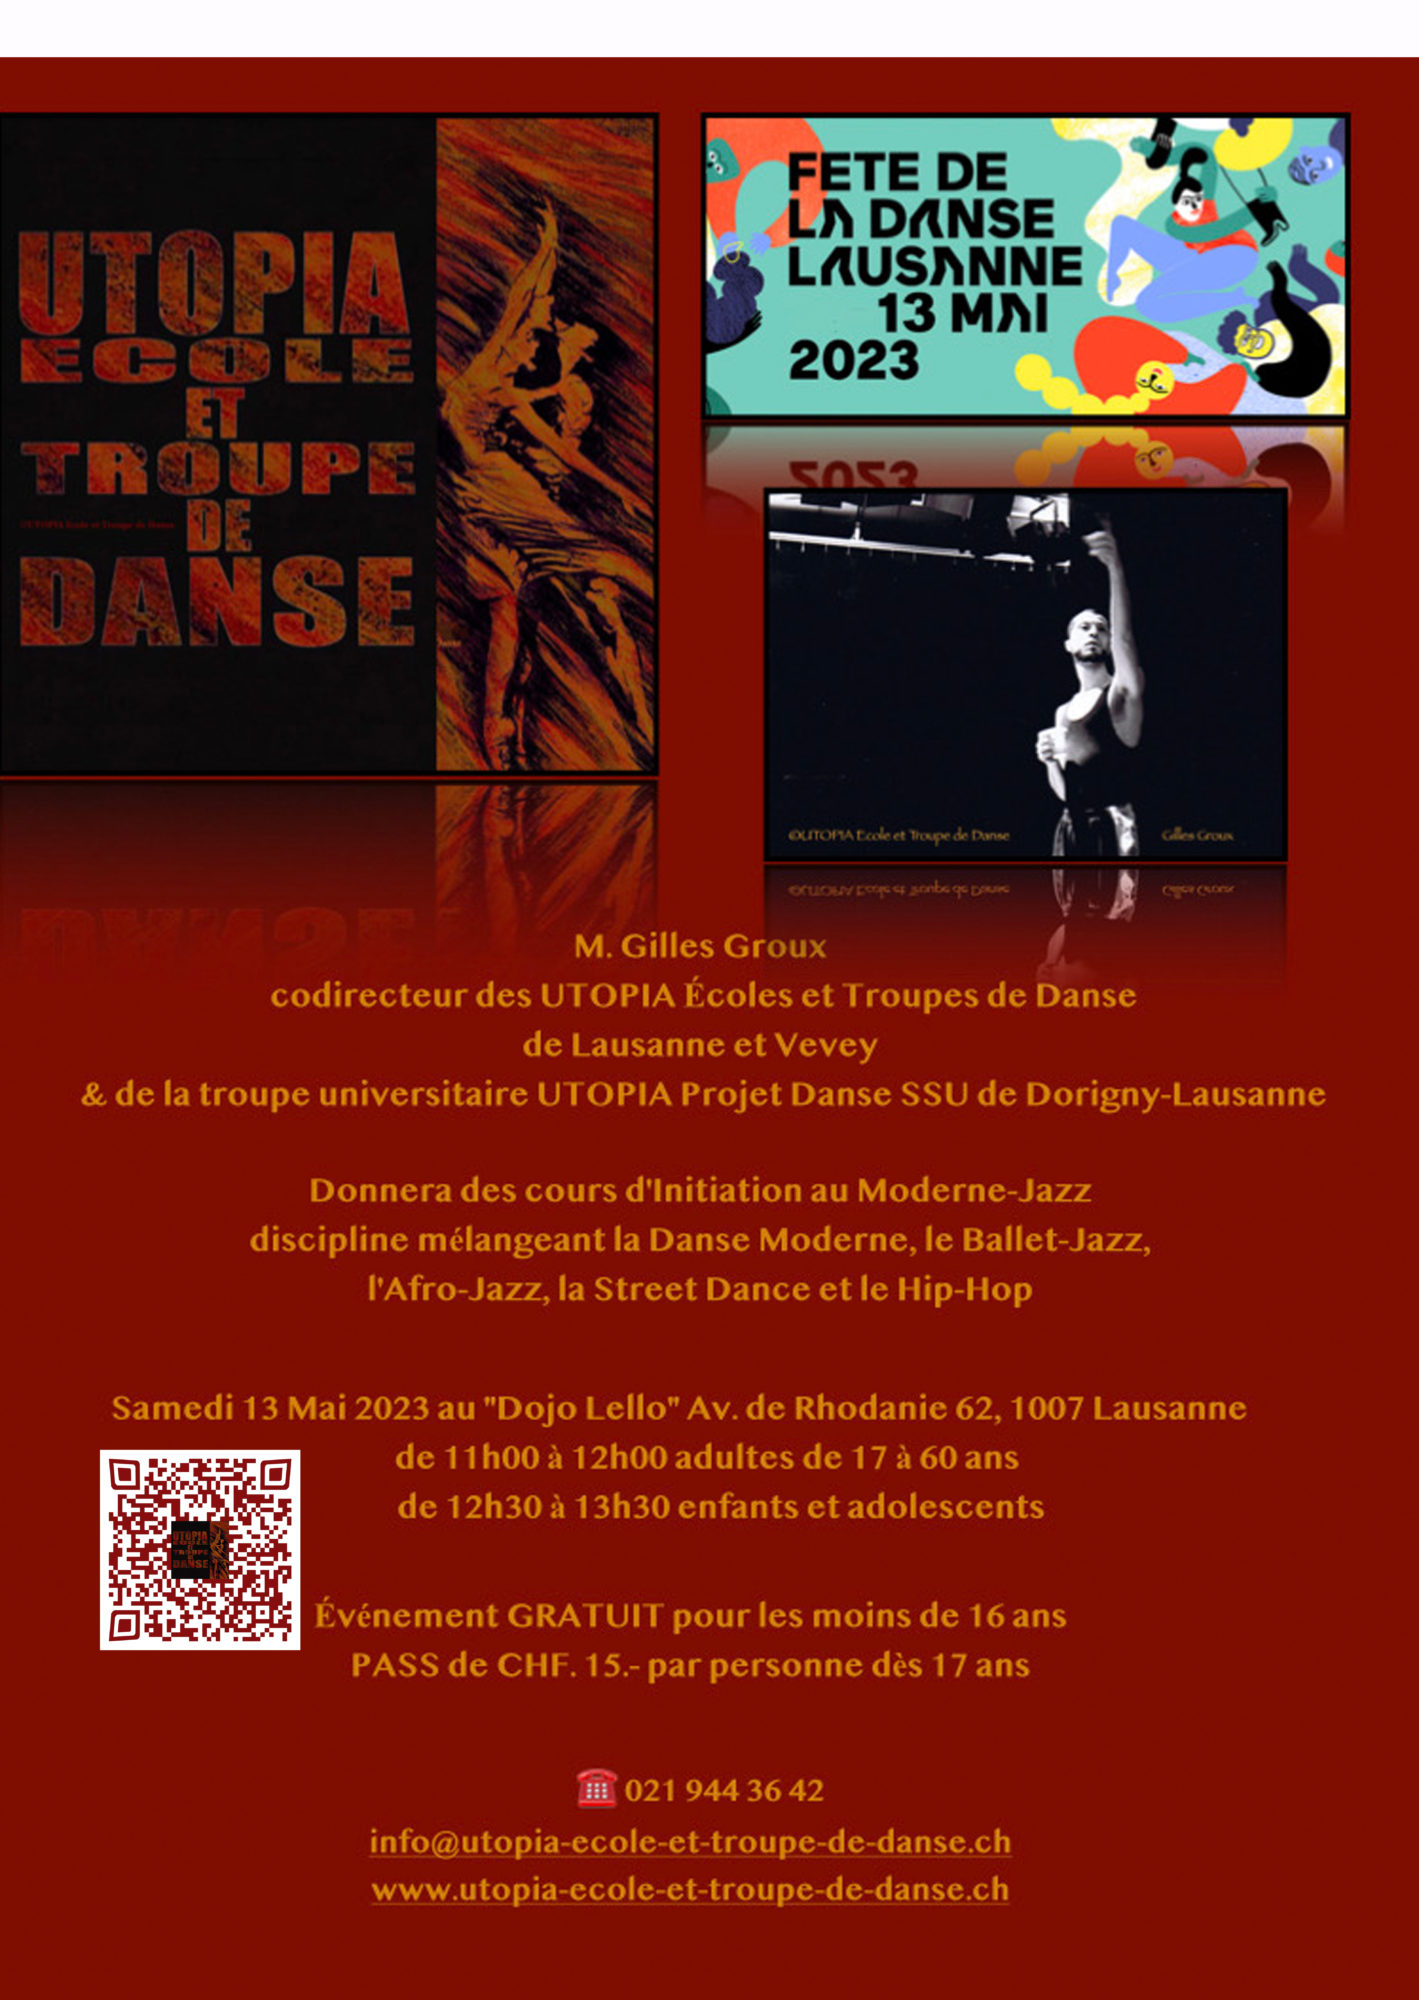 Fête de la danse Lausanne 13 mai 2023 ...